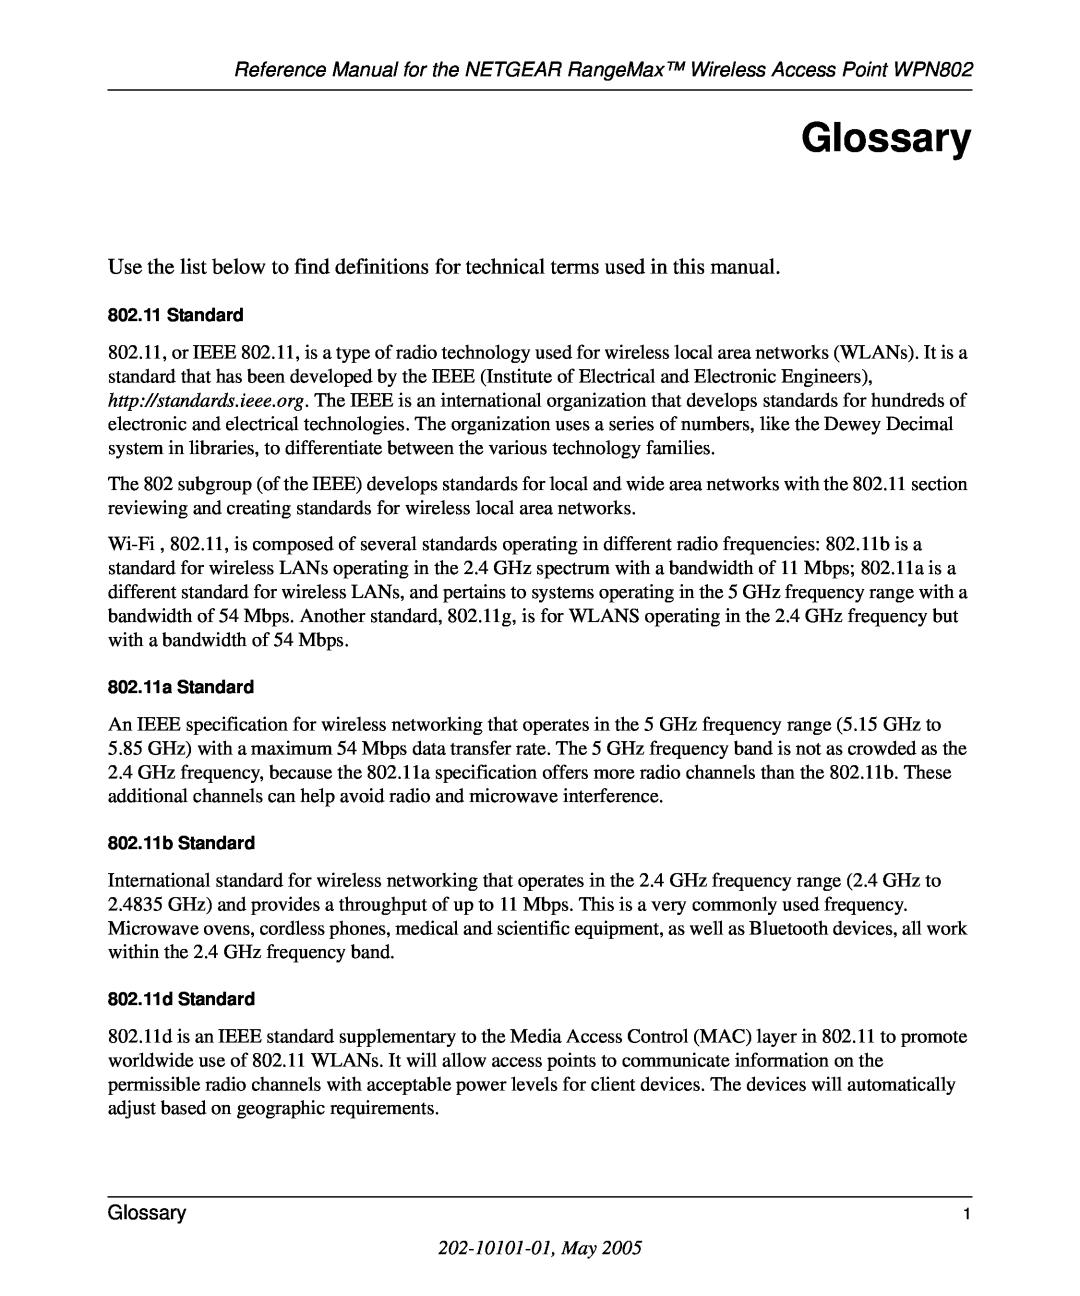 NETGEAR WPN802 manual Glossary, 202-10101-01, May 